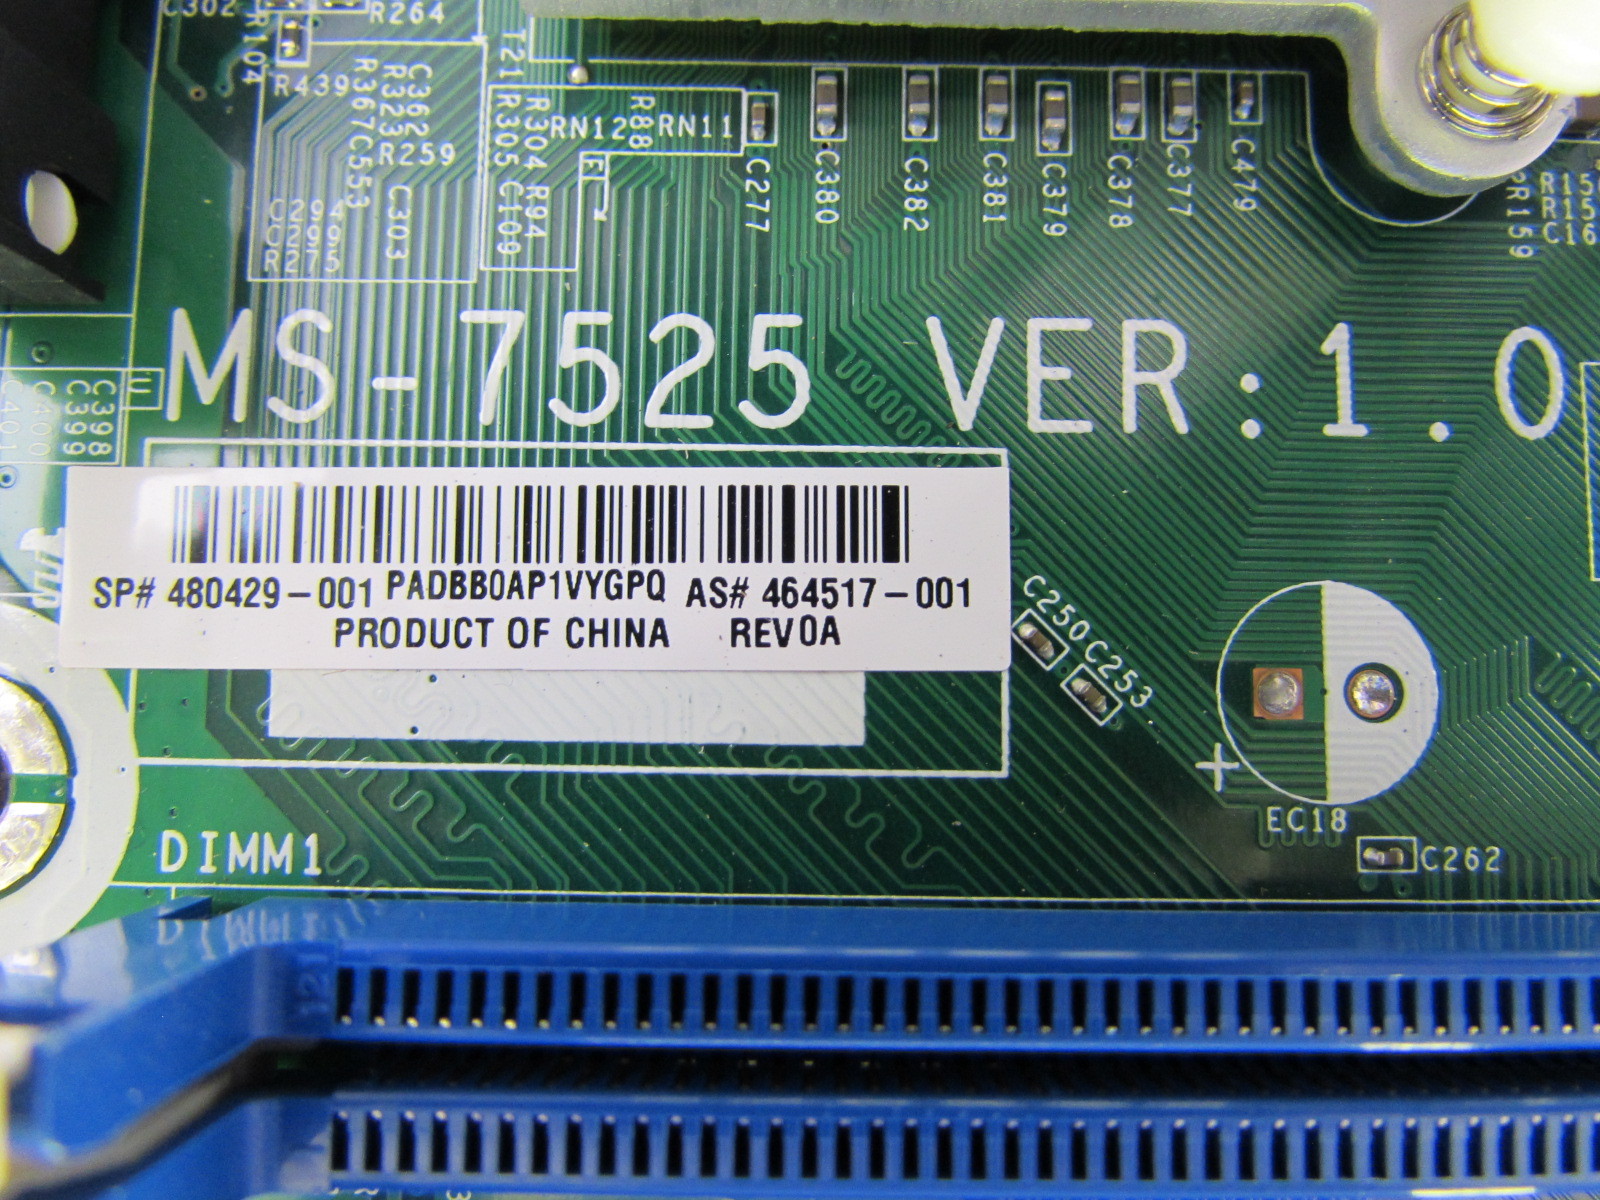 Ms 7525 motherboard bios update